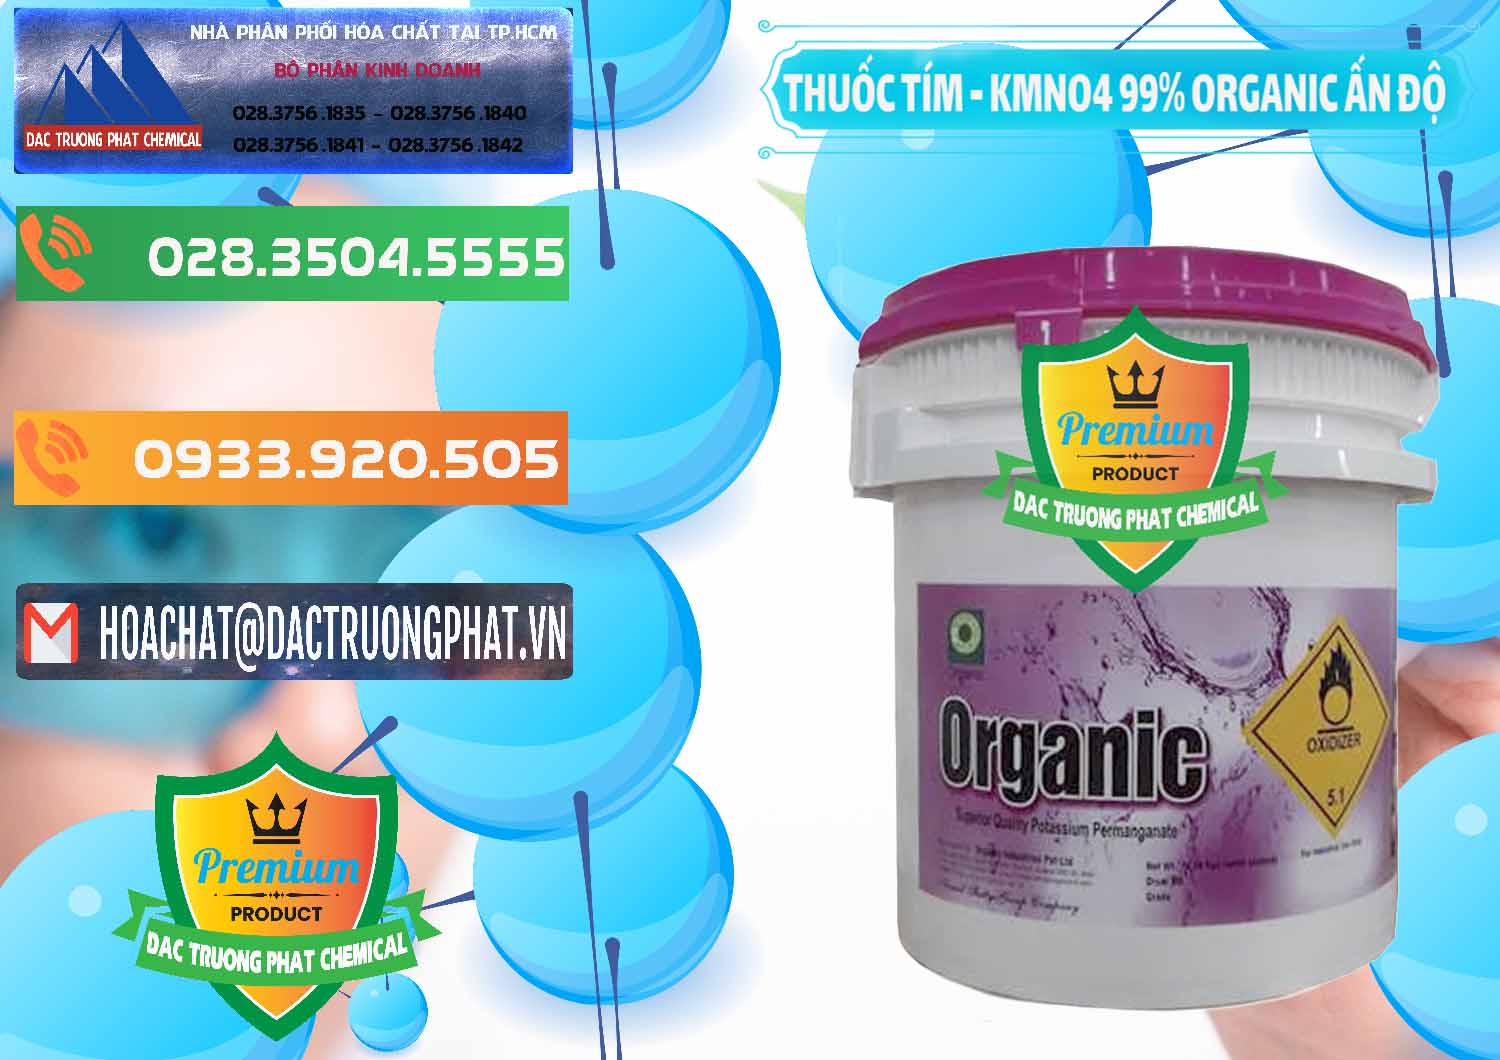 Cty cung cấp & bán Thuốc Tím - KMNO4 99% Organic Ấn Độ India - 0216 - Nơi cung cấp _ bán hóa chất tại TP.HCM - hoachatxulynuoc.com.vn